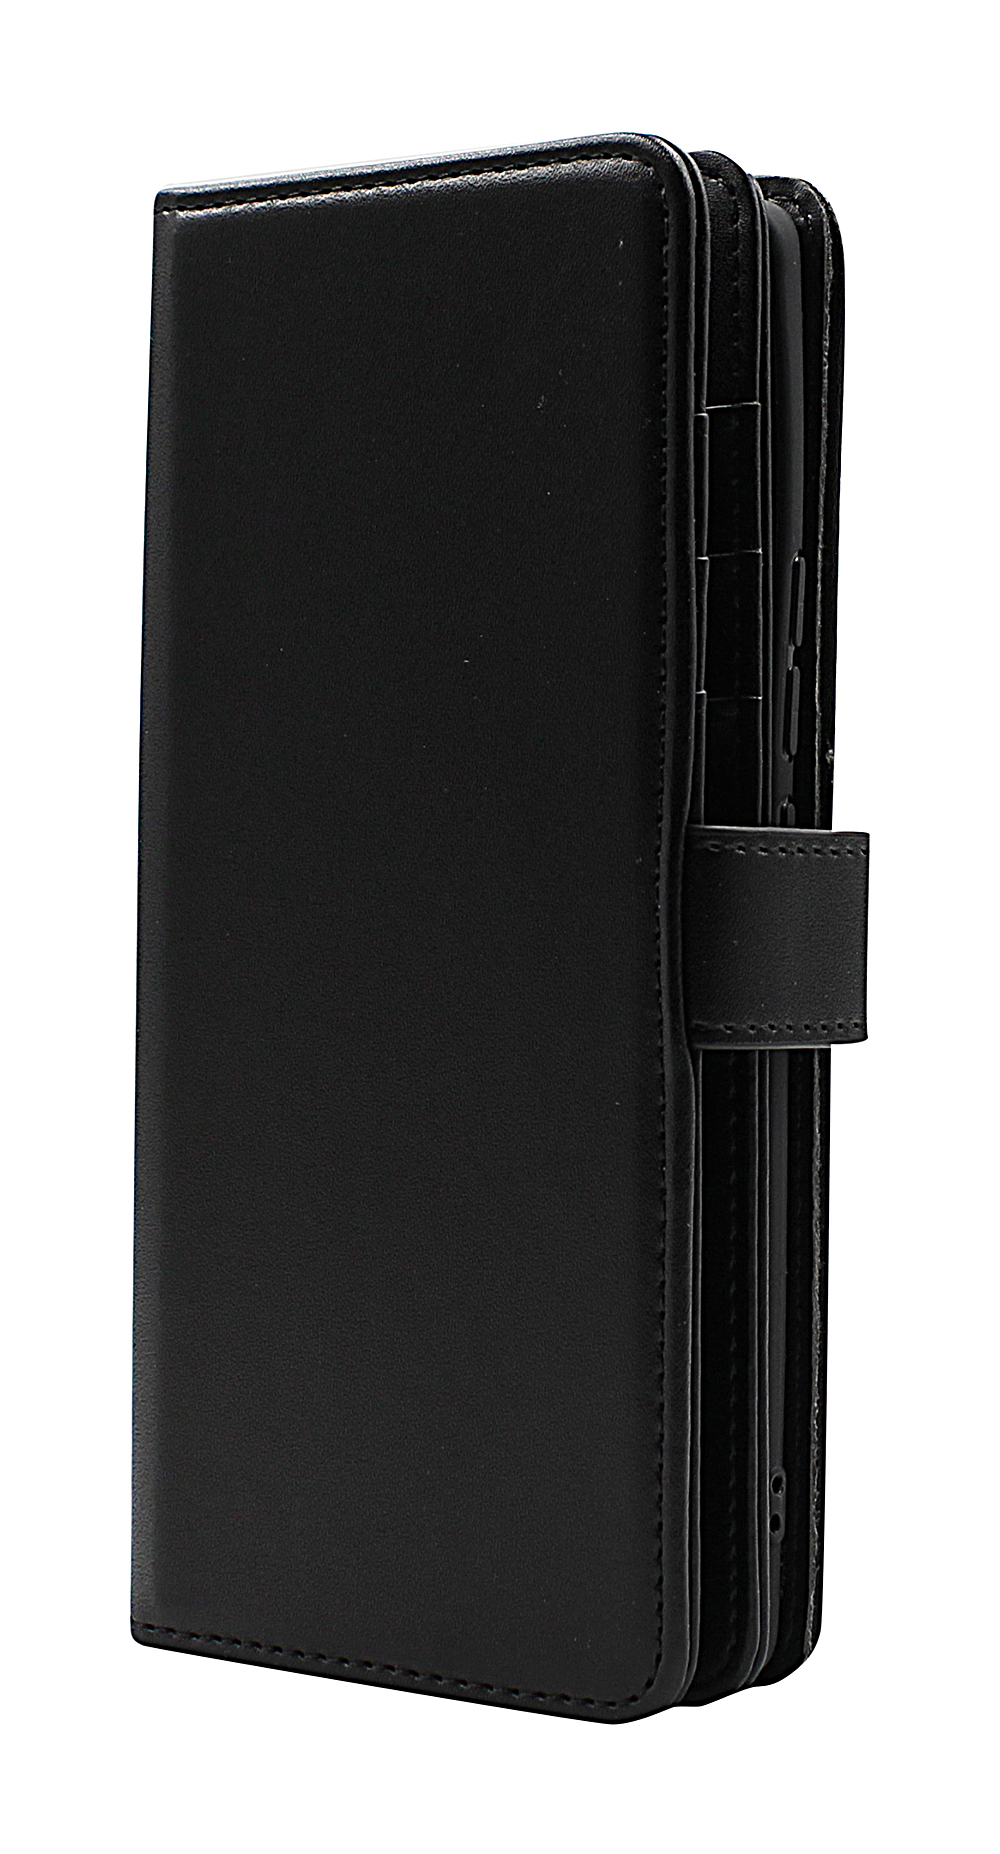 CoverInSkimblocker XL Wallet ZTE Axon 30 Ultra 5G